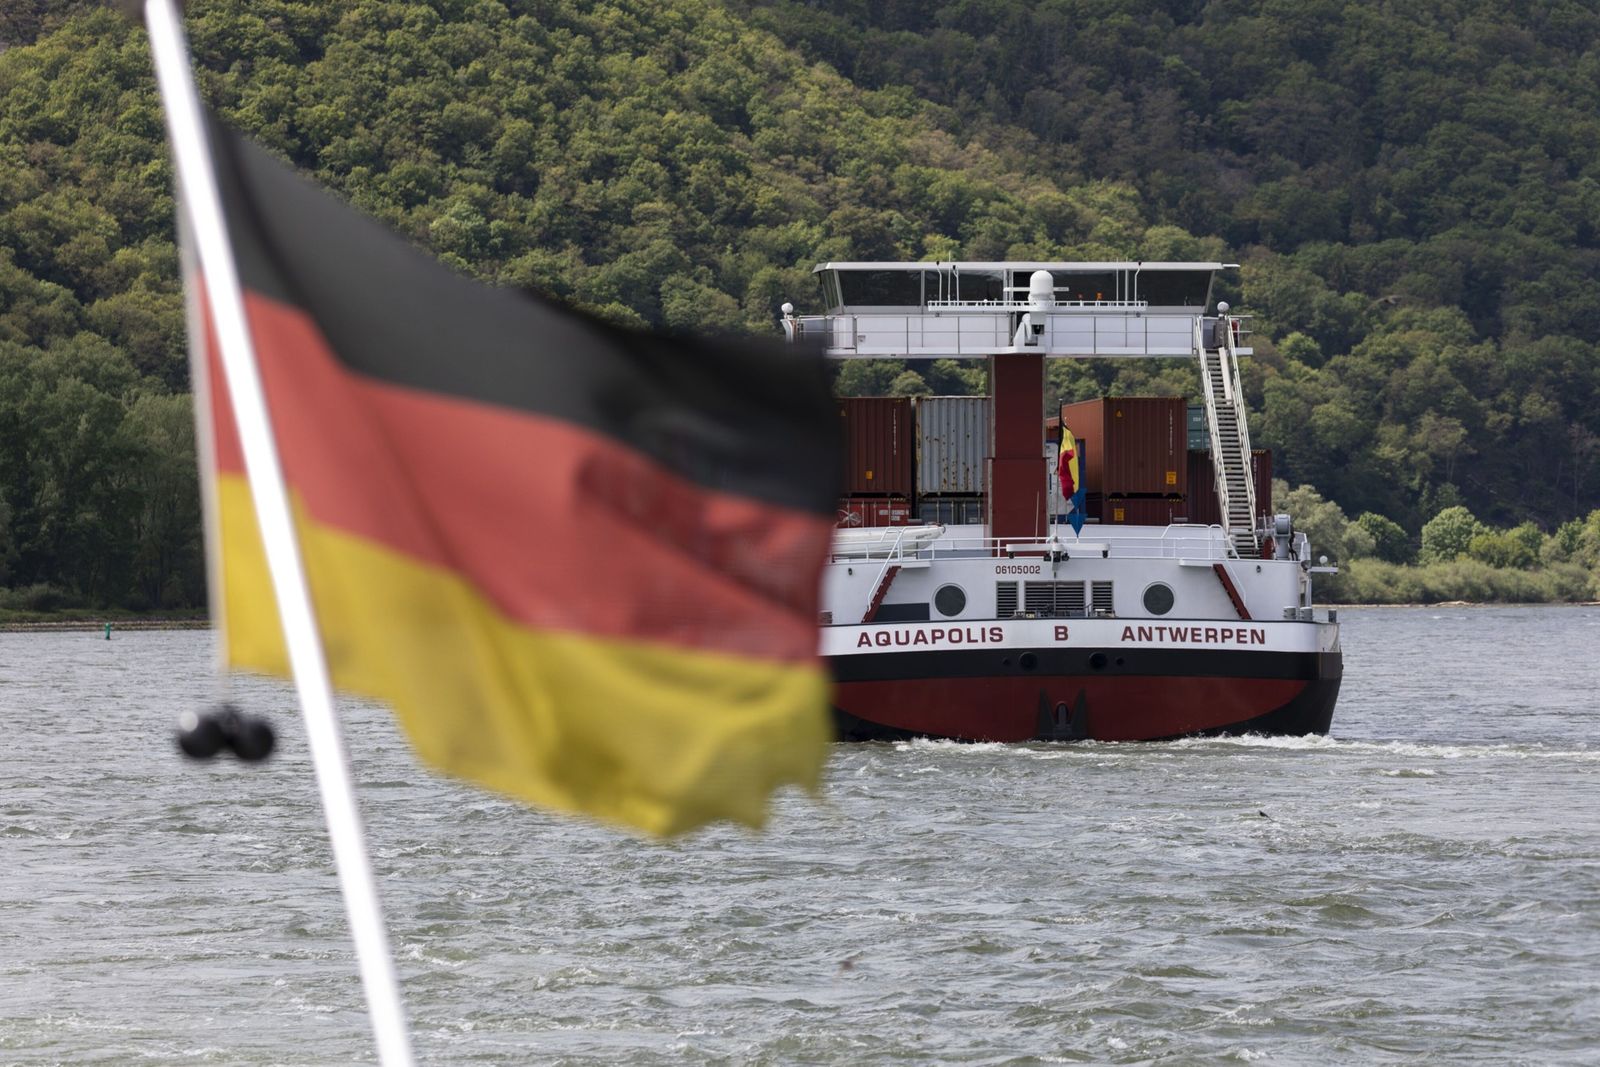 ألمانيا تتقدم لإزاحة اليابان عن عرش ثالث أكبر اقتصاد بالعالم